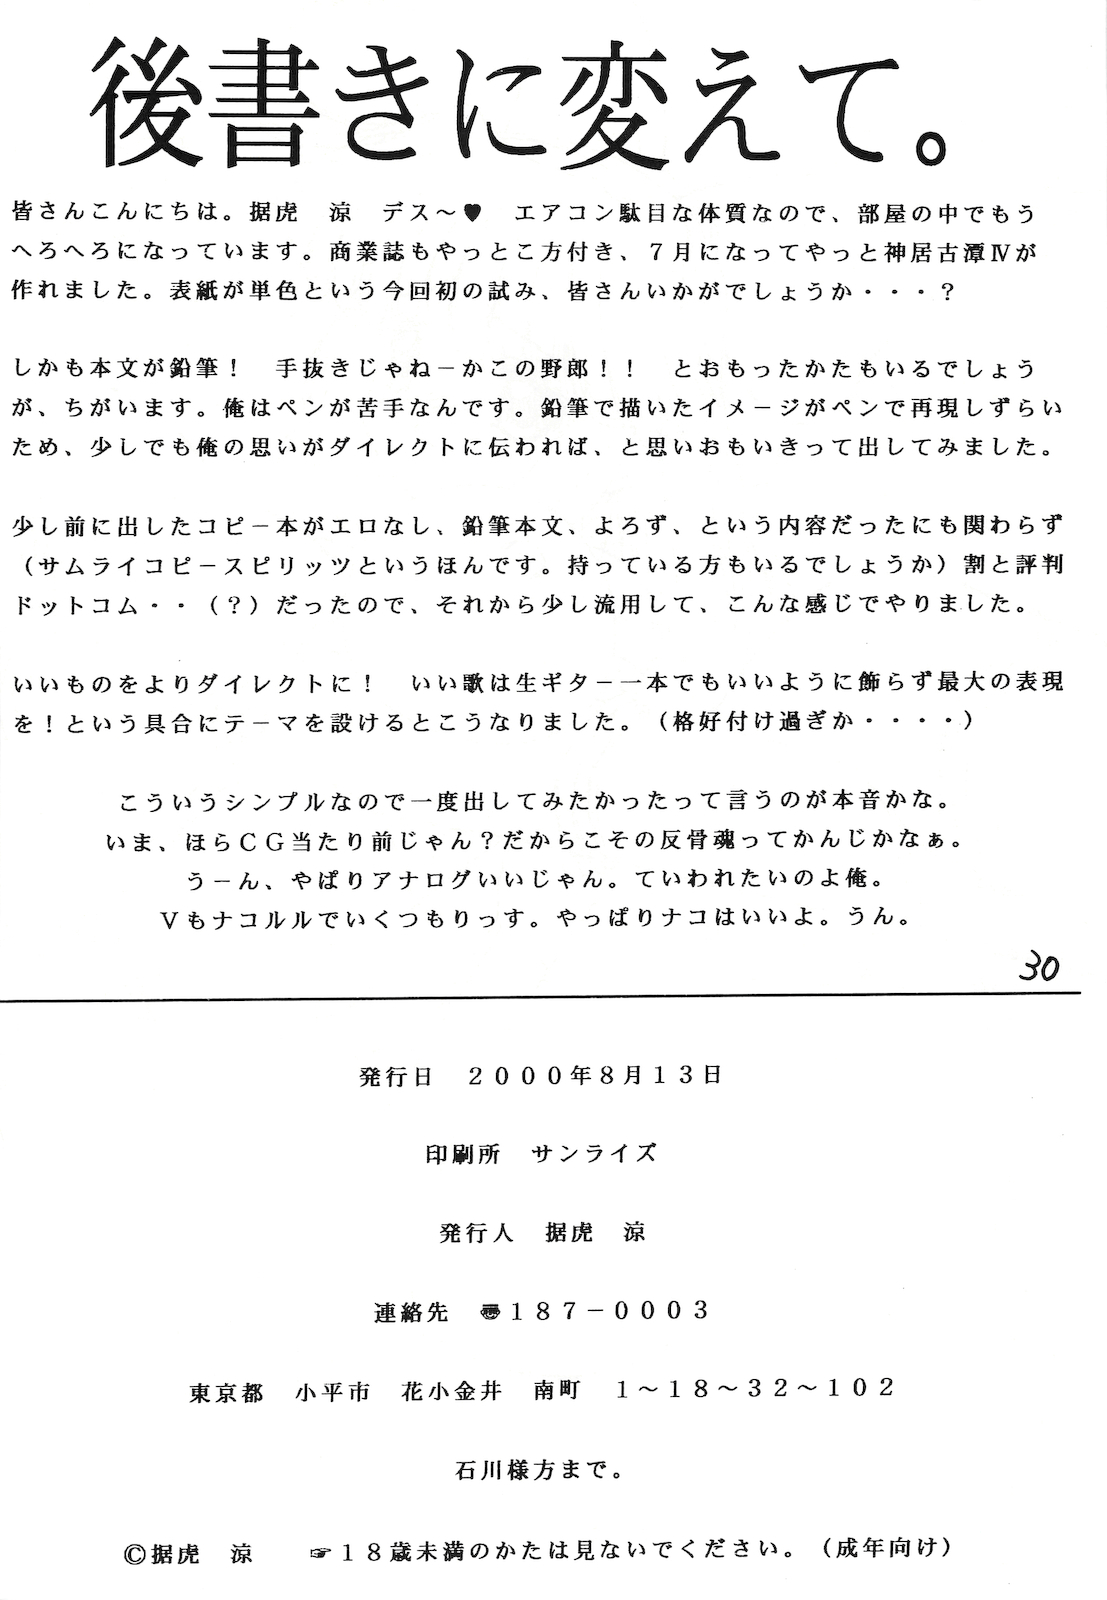 (C58) [Circle STR (Suetora Ryo)] Kamui Kotan IV (Samurai Spirits) page 29 full